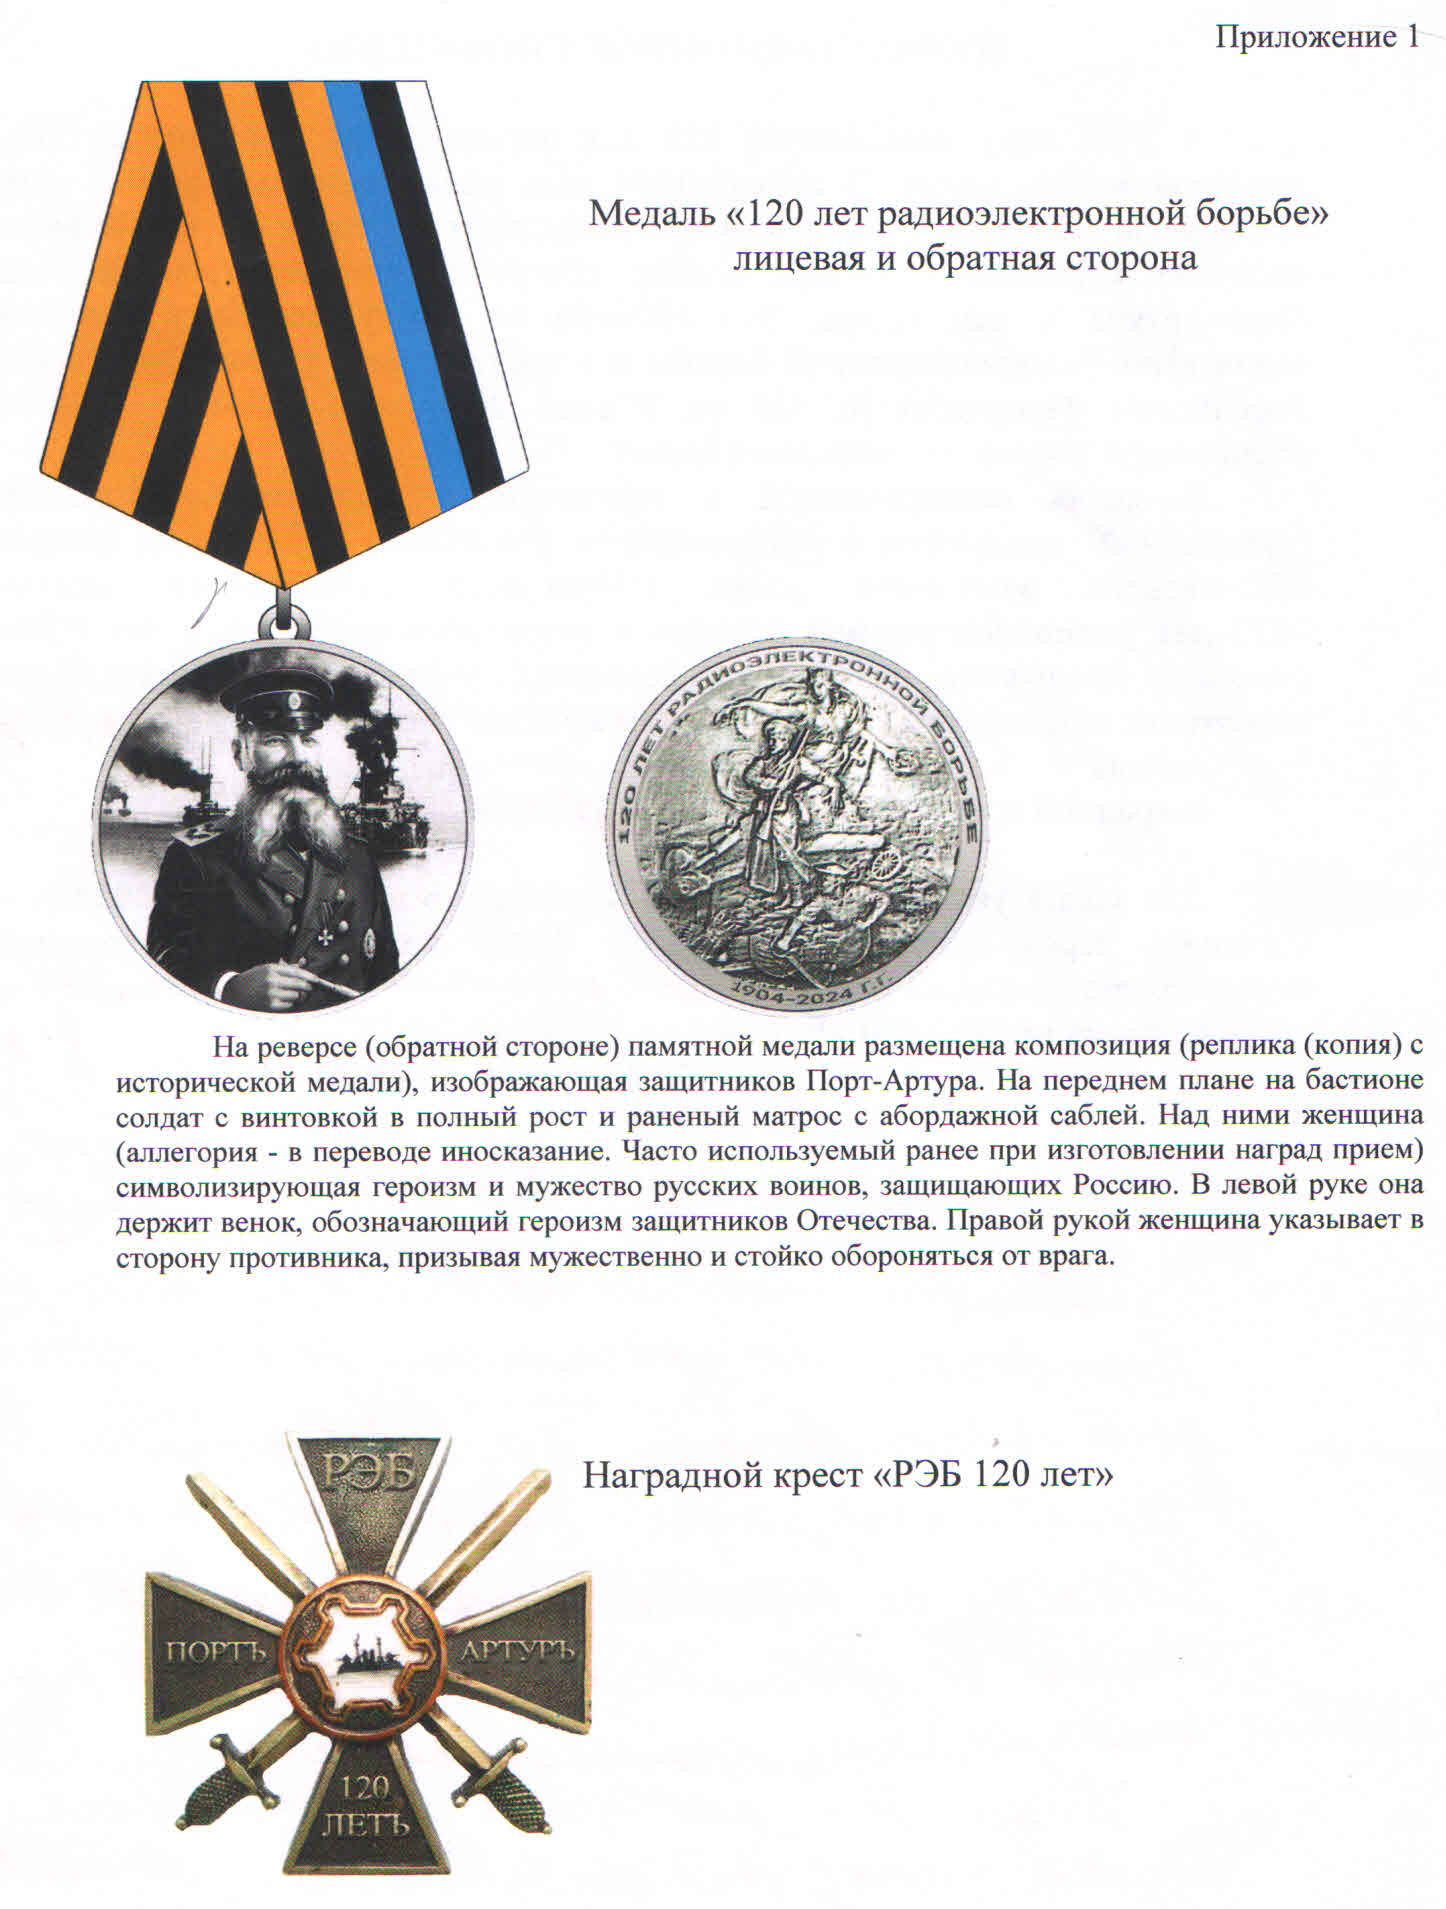 medal_120.jpg